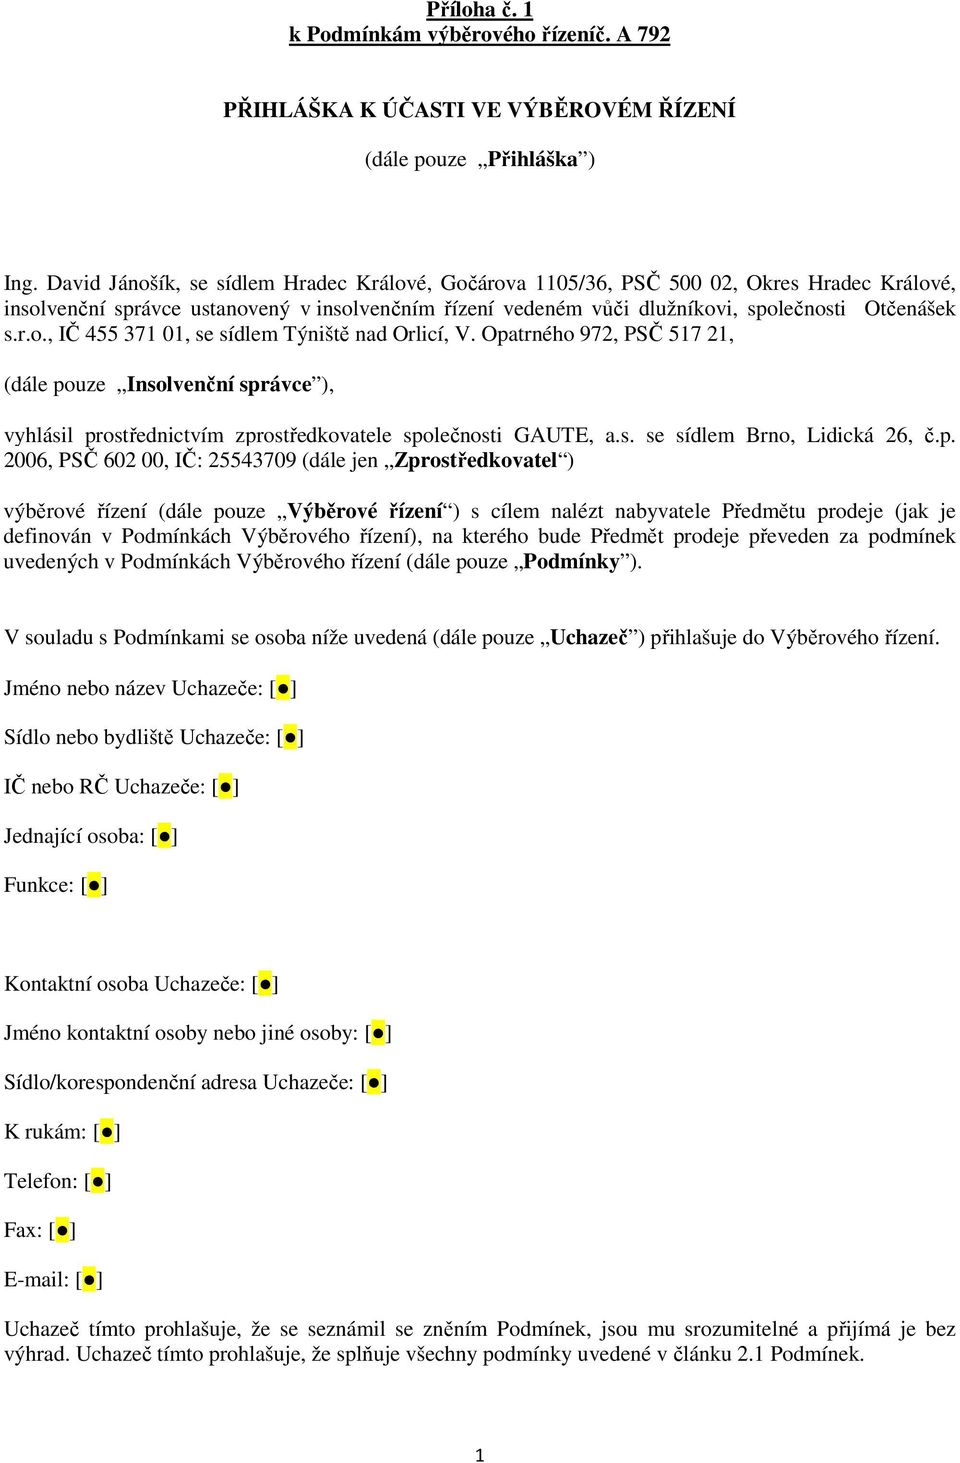 Opatrného 972, PSČ 517 21, (dále pouze Insolvenční správce ), vyhlásil prostřednictvím zprostředkovatele společnosti GAUTE, a.s. se sídlem Brno, Lidická 26, č.p. 2006, PSČ 602 00, IČ: 25543709 (dále